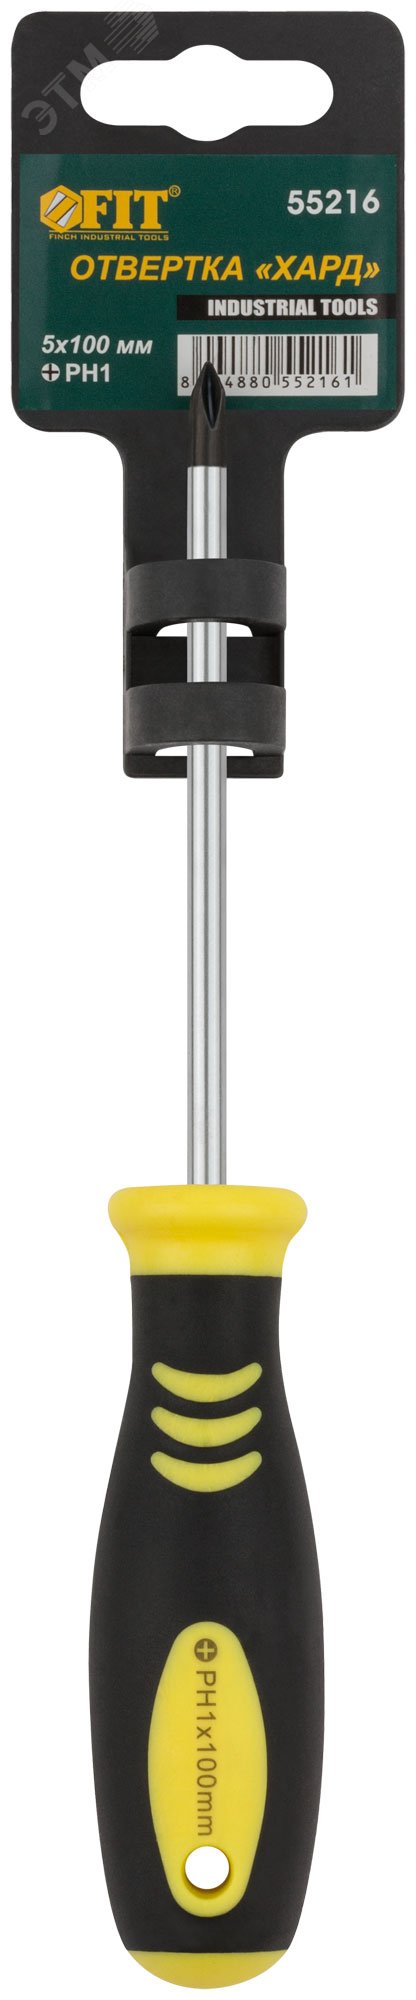 Отвертка ''Хард'', CrV сталь, прорезиненная черно-желтая ручка 5х100 мм РН1 55216 FIT - превью 3